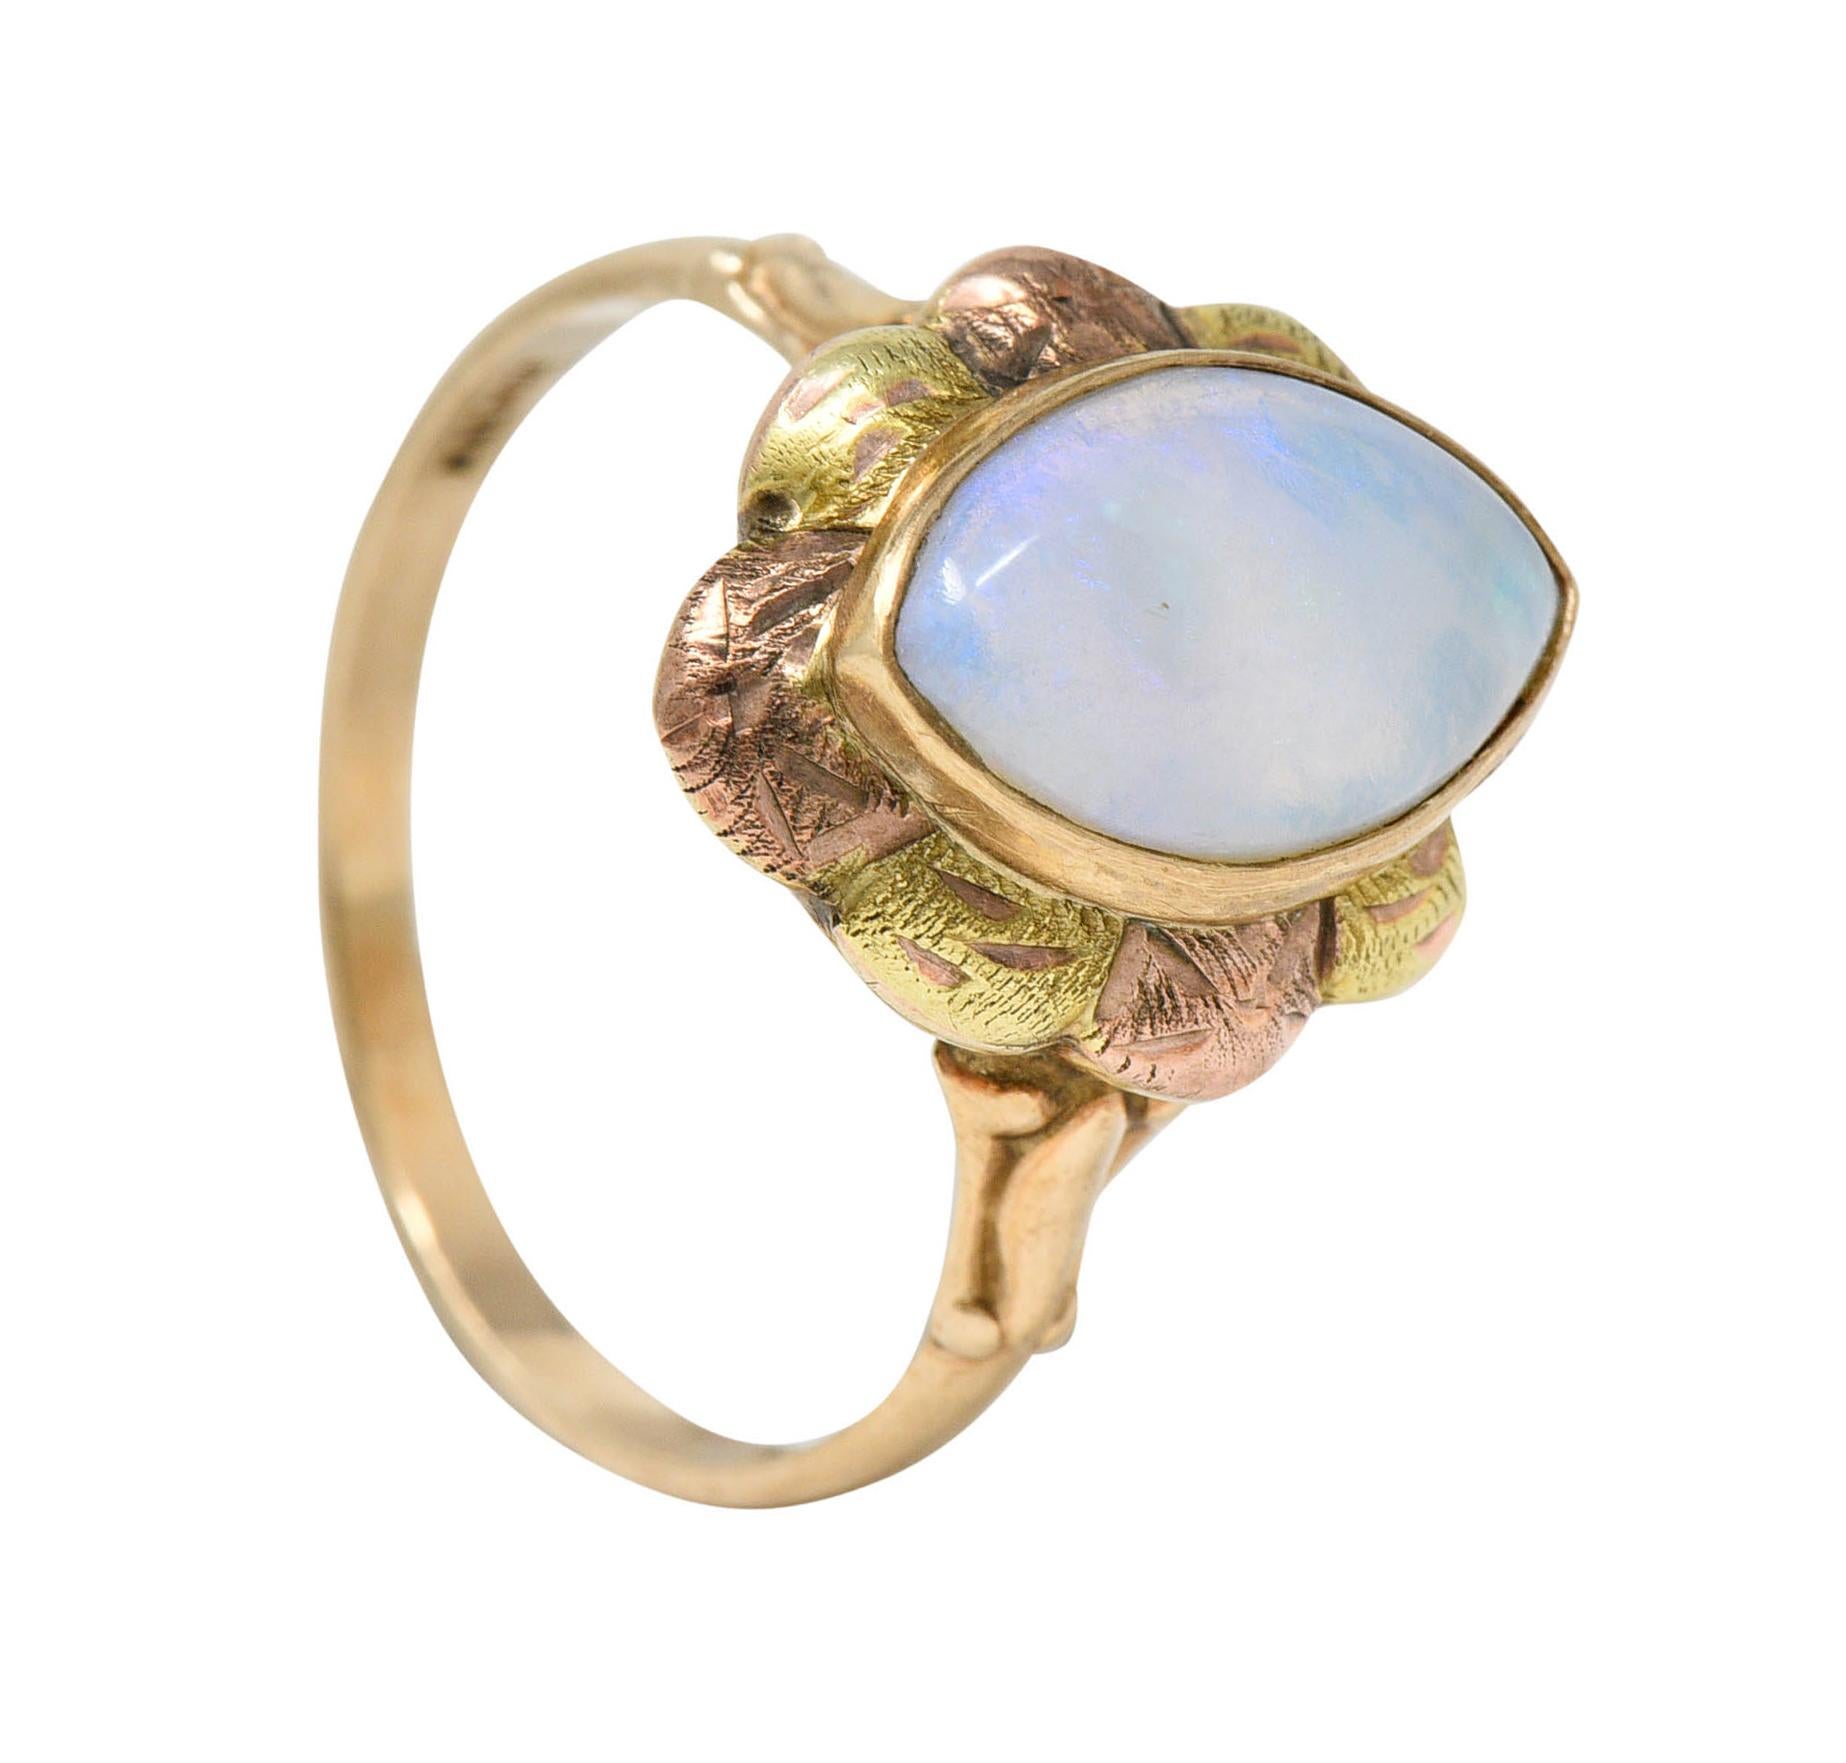 Esemco Vintage Victorian Revival Opal Tri-Colored 10 Karat Gold Navette Ring 1